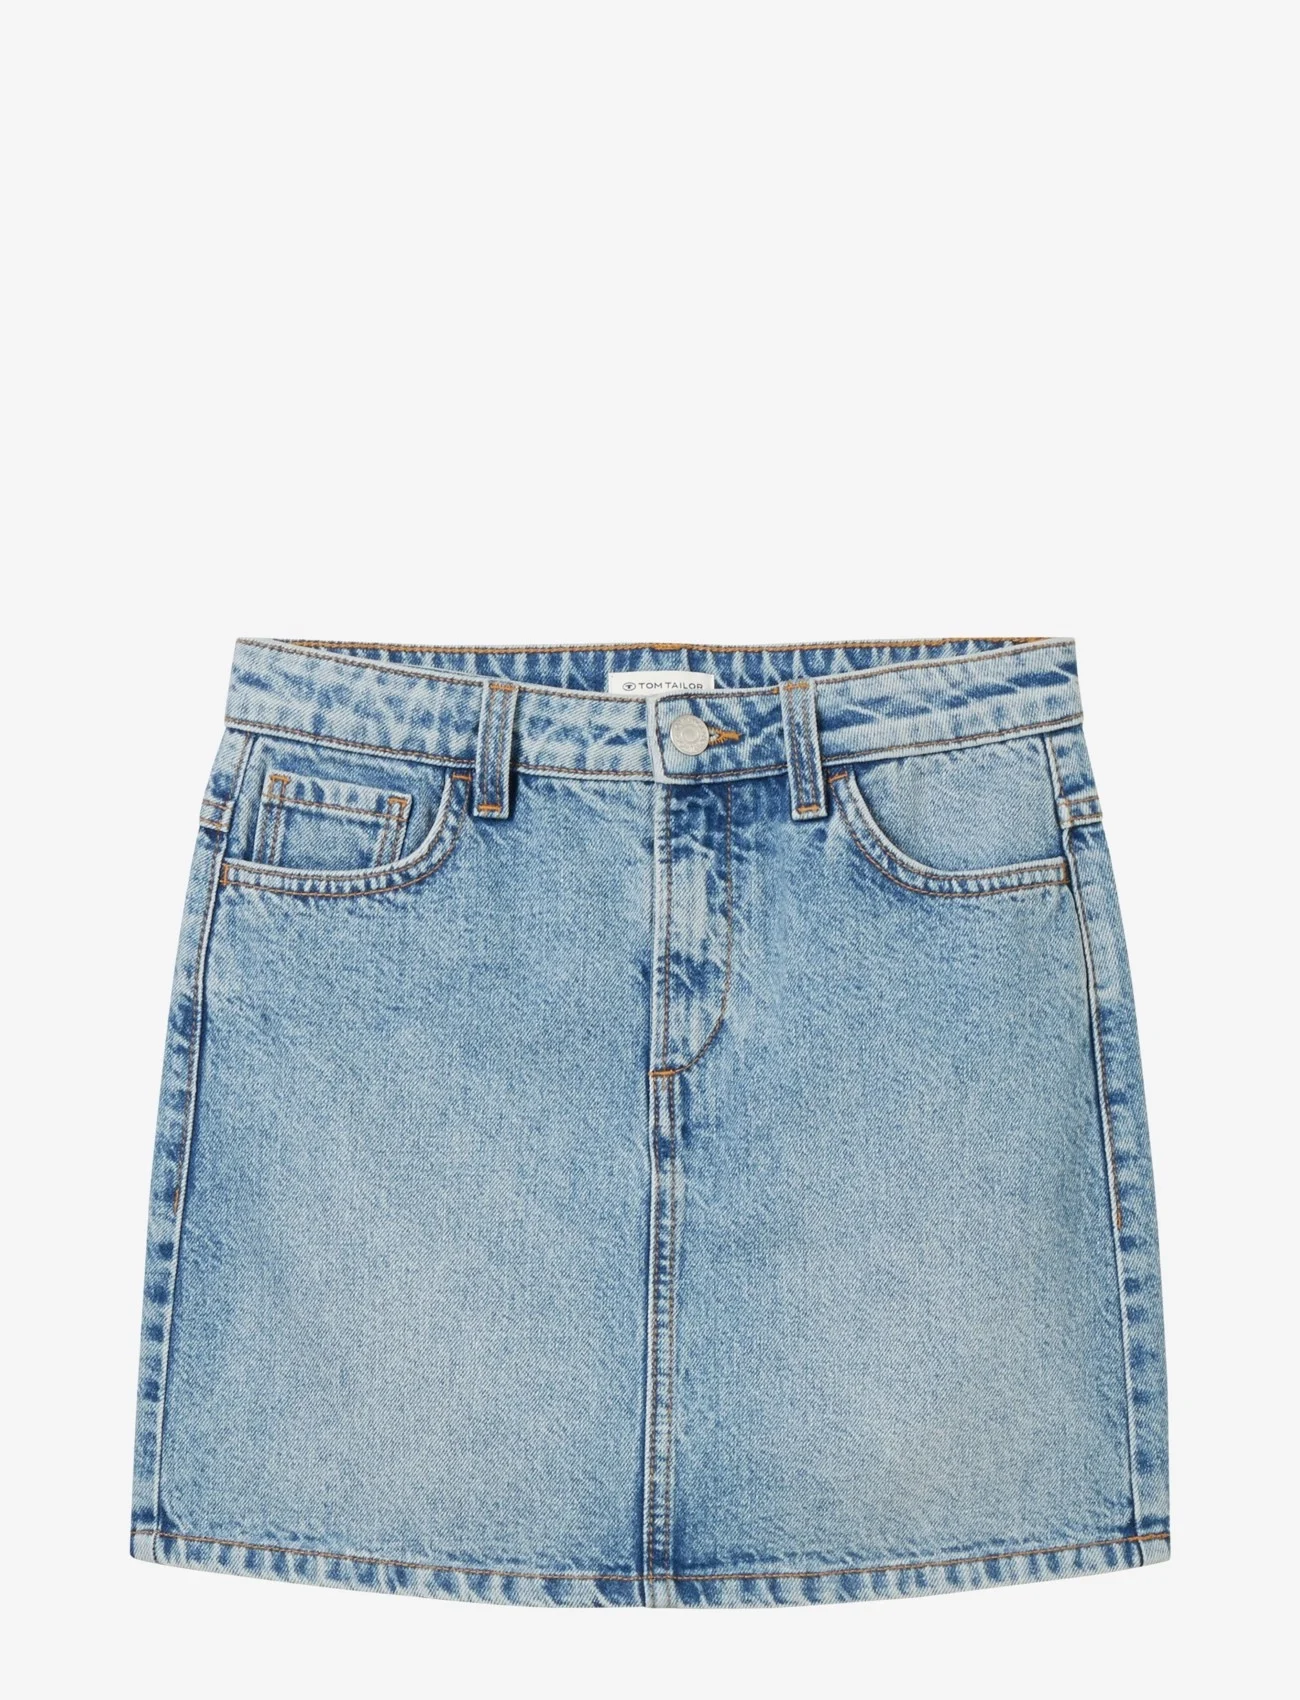 Tom Tailor - denim mini skirt - jeanskjolar - used light stone blue denim - 0